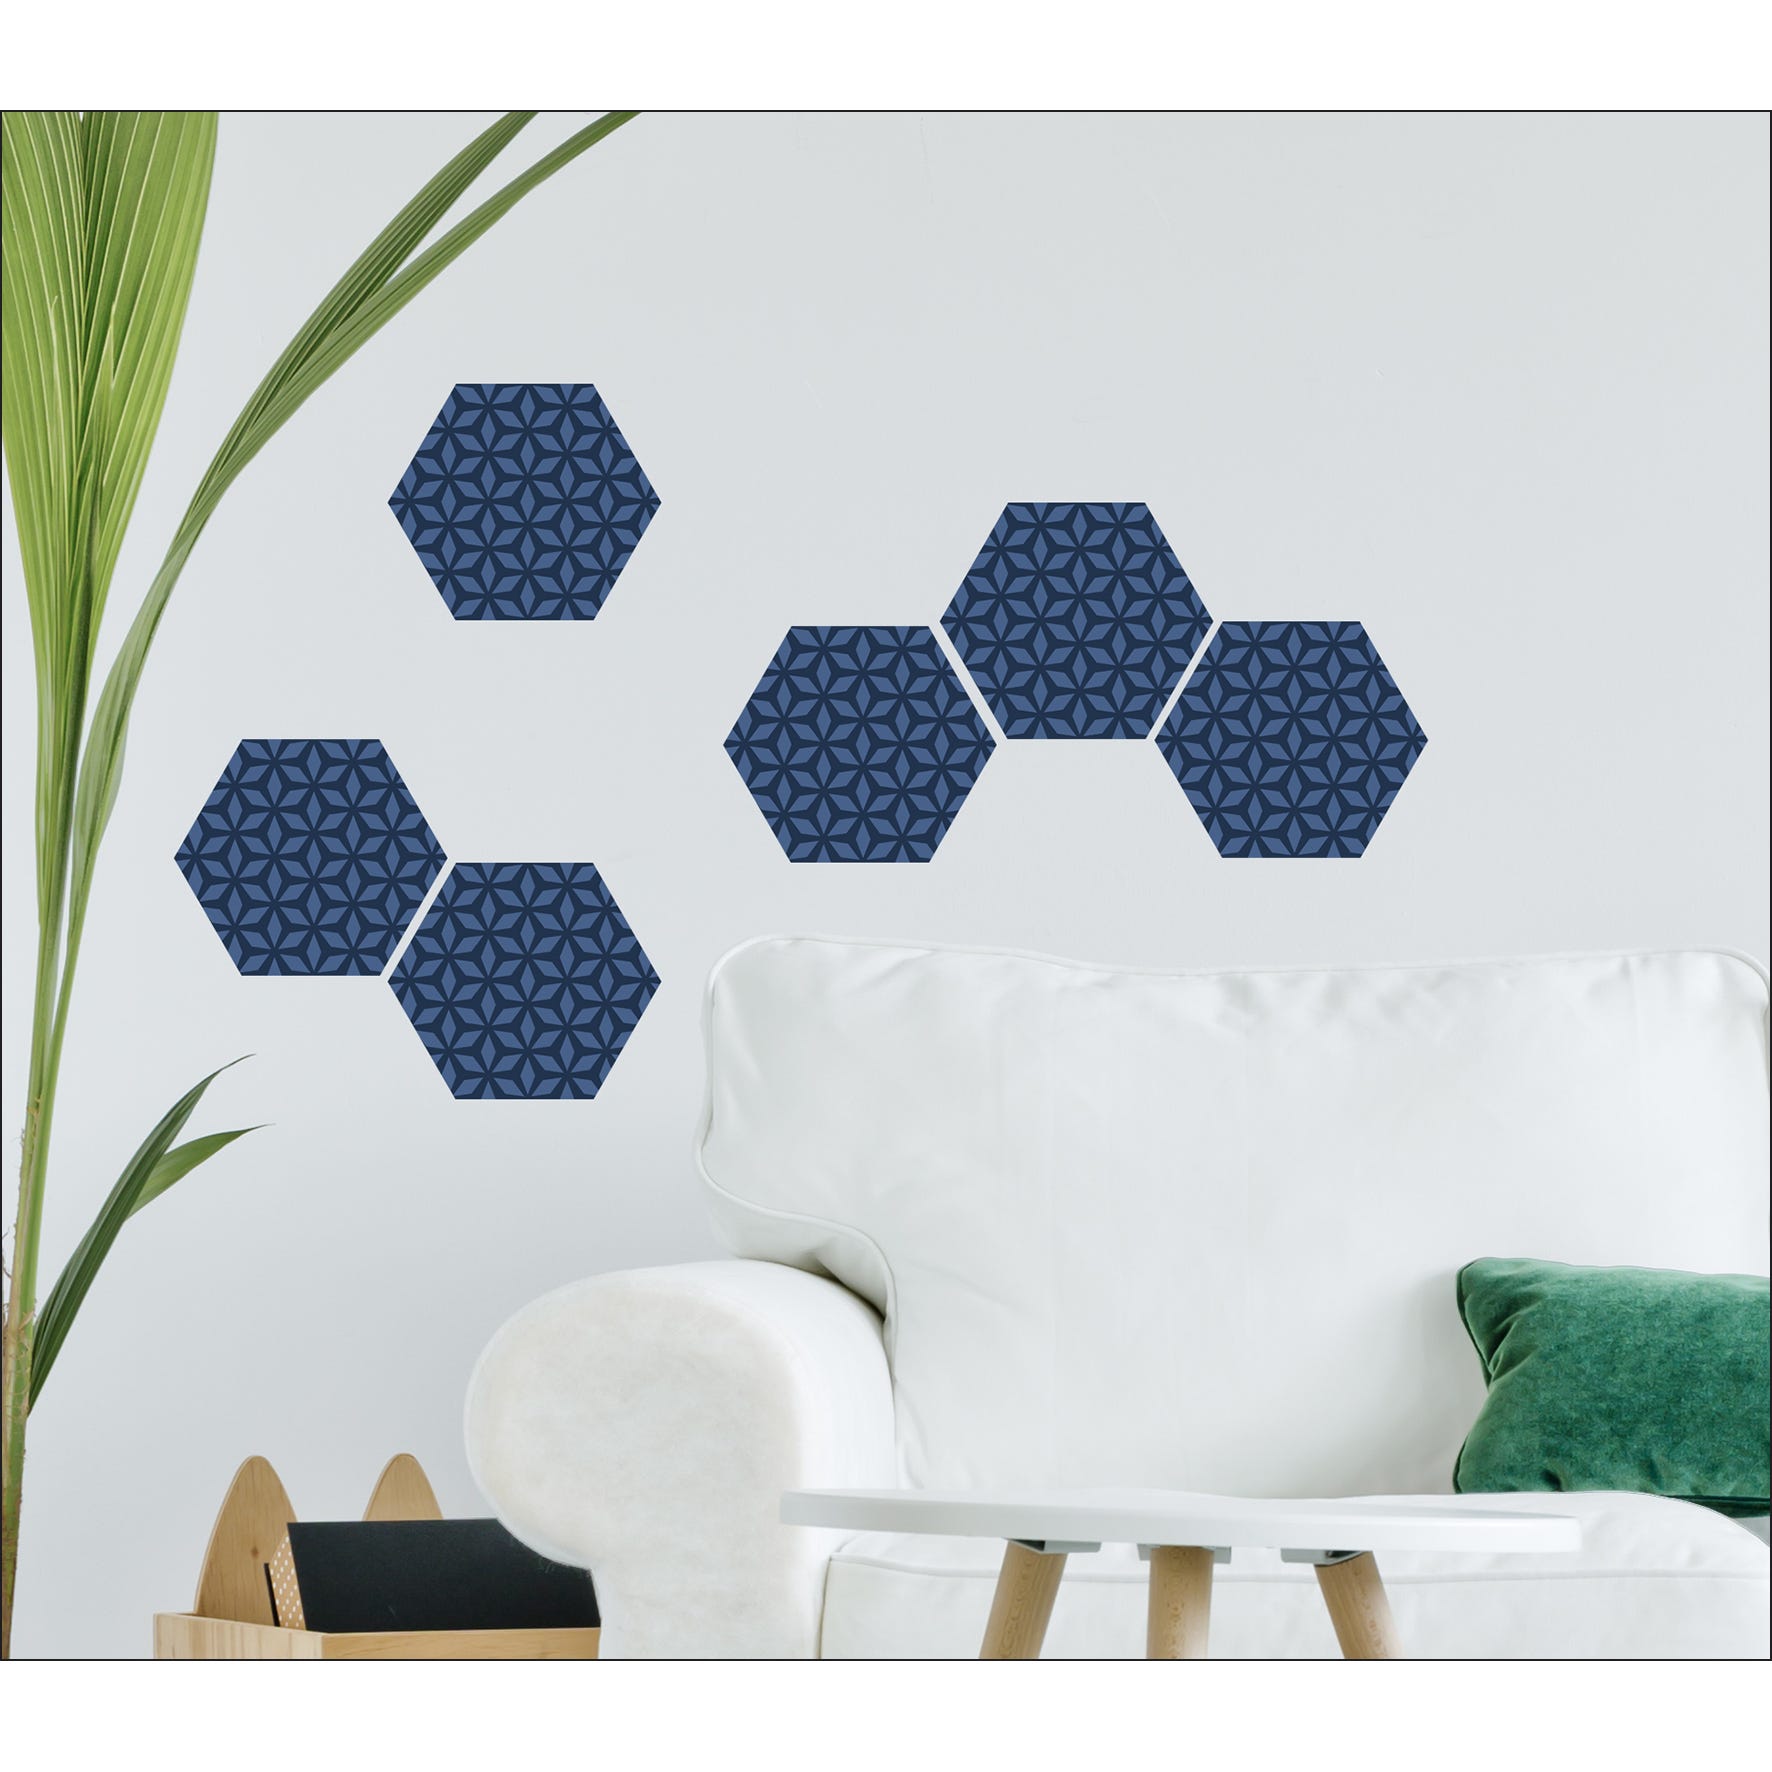 Sticker carrelage adhésif décoratif autocollant, hexagonale tons